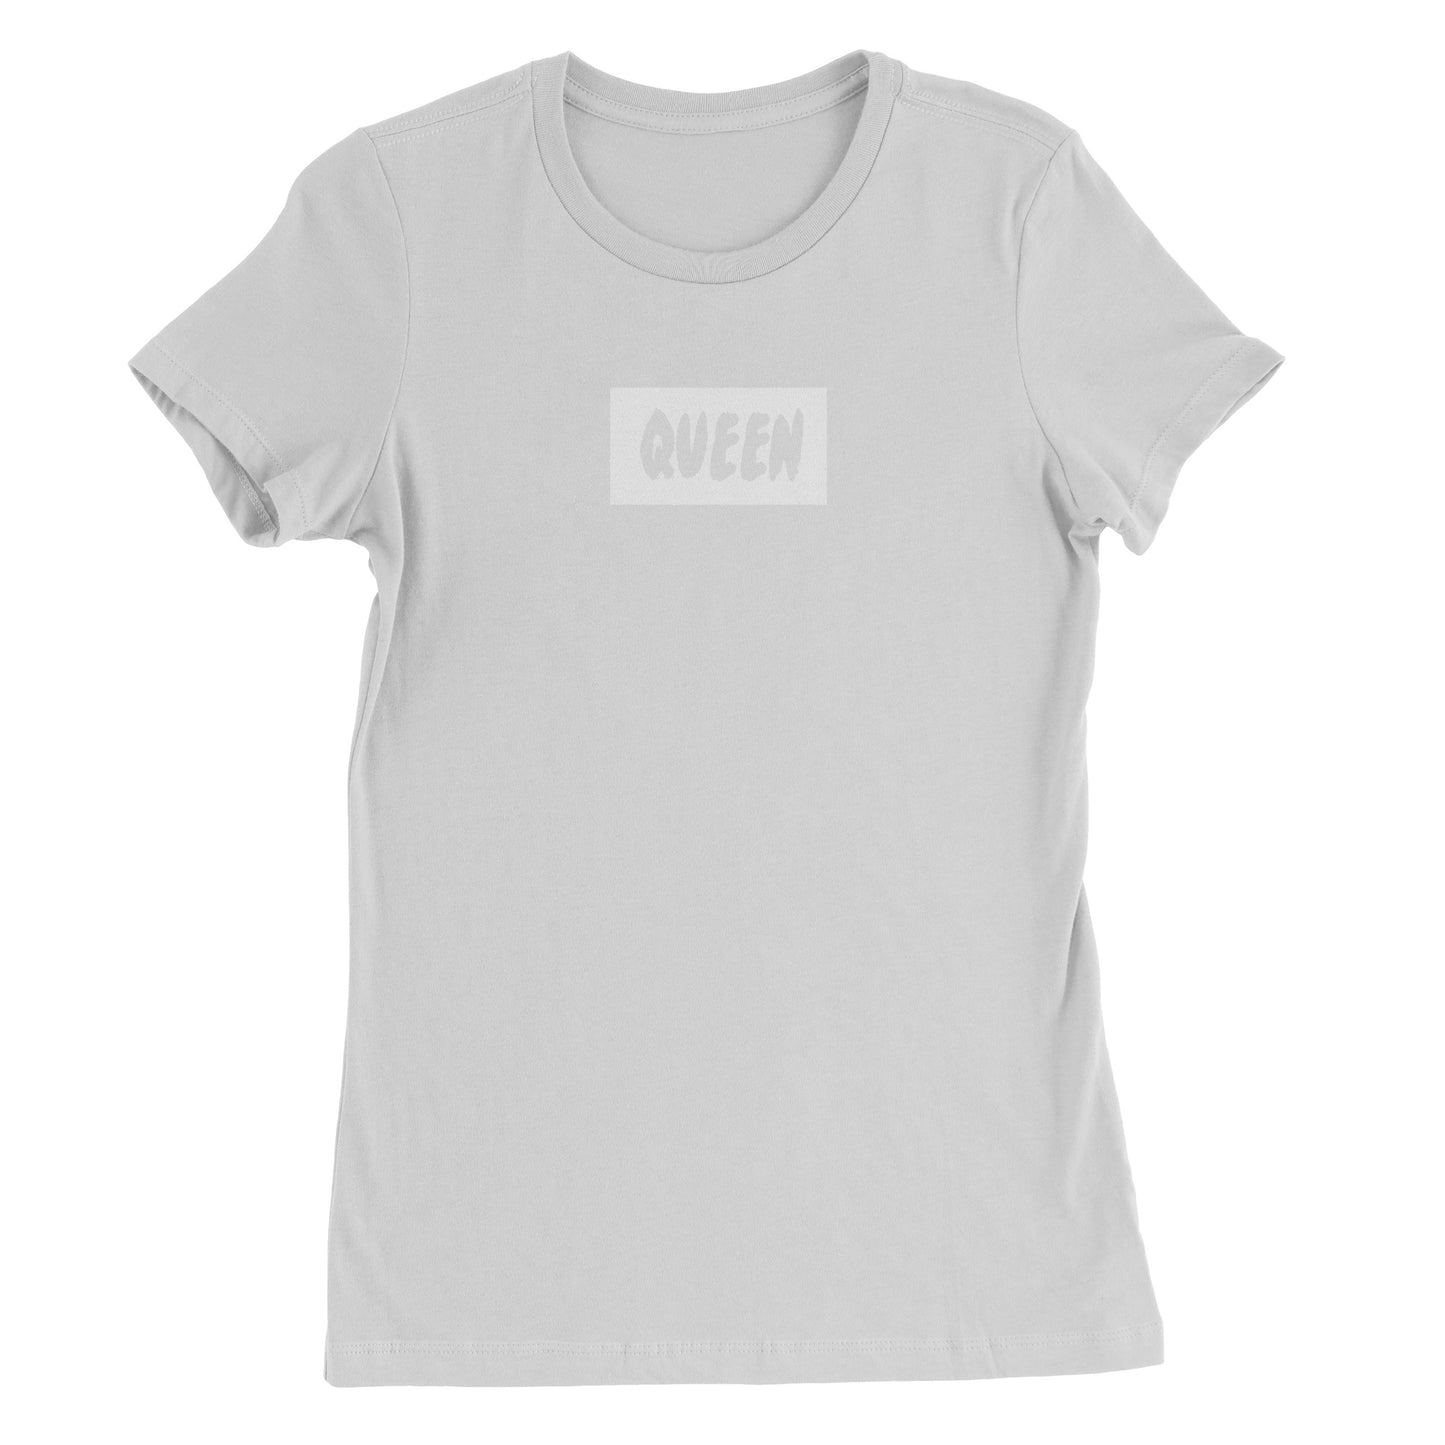 Queen Box Logo Tee (White On White)